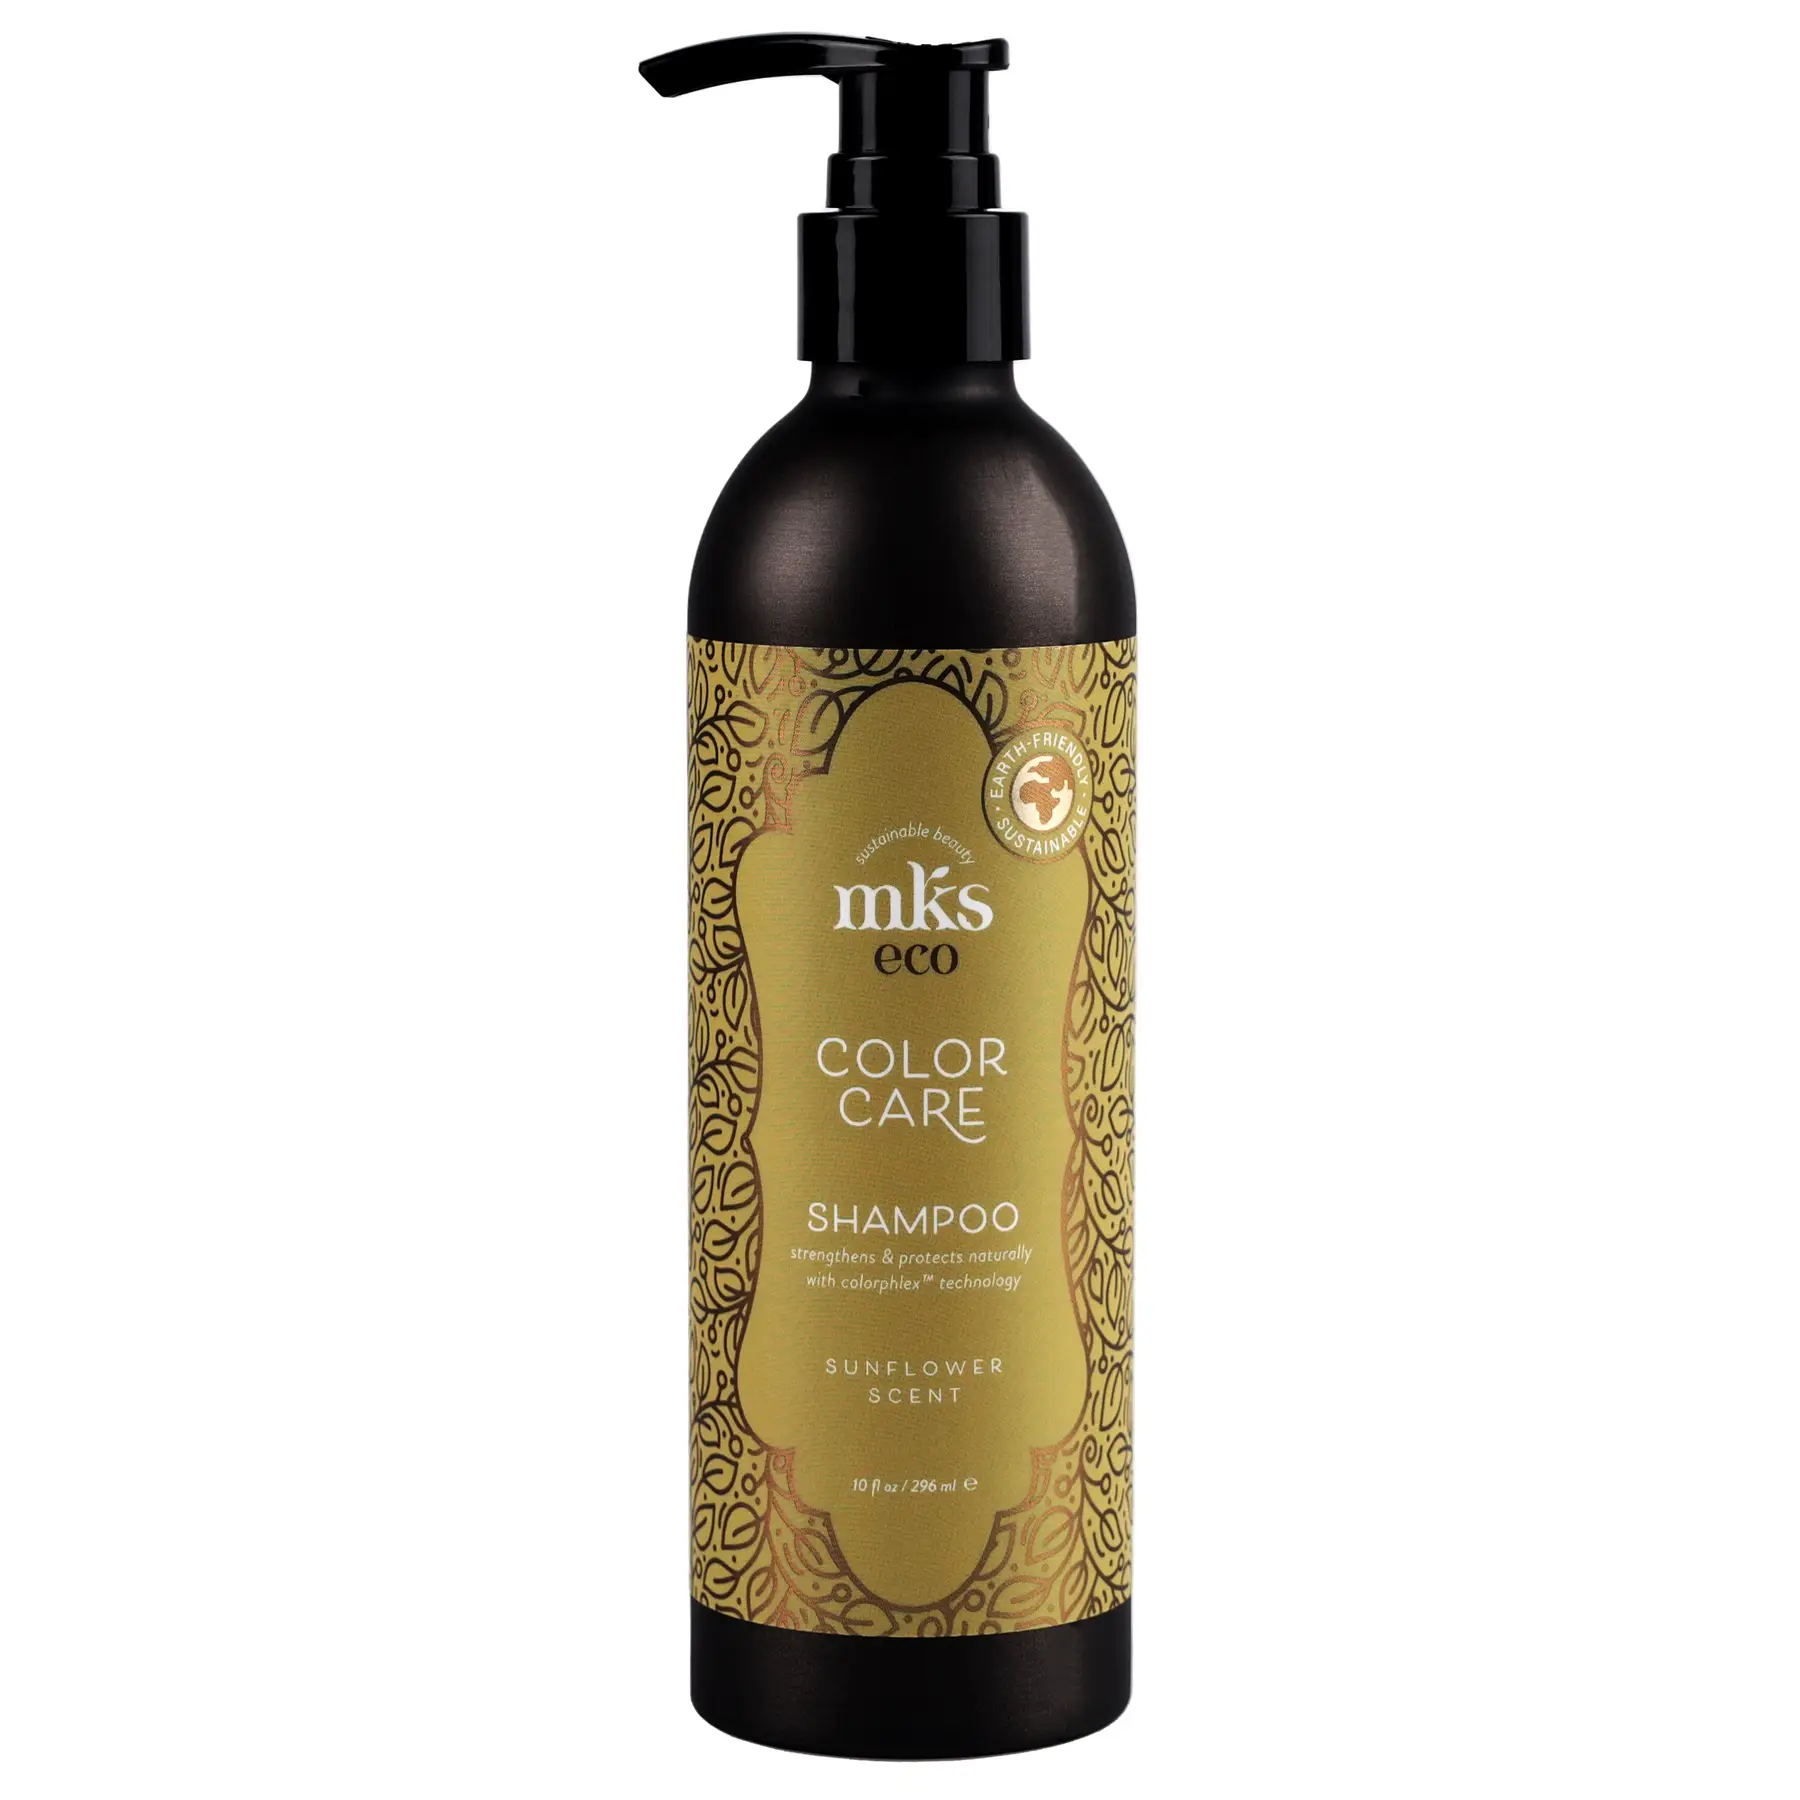 Шампунь для окрашенных волос MKS-ECO Color Care Shampoo Sunflower Scent 296 мл — фото №1